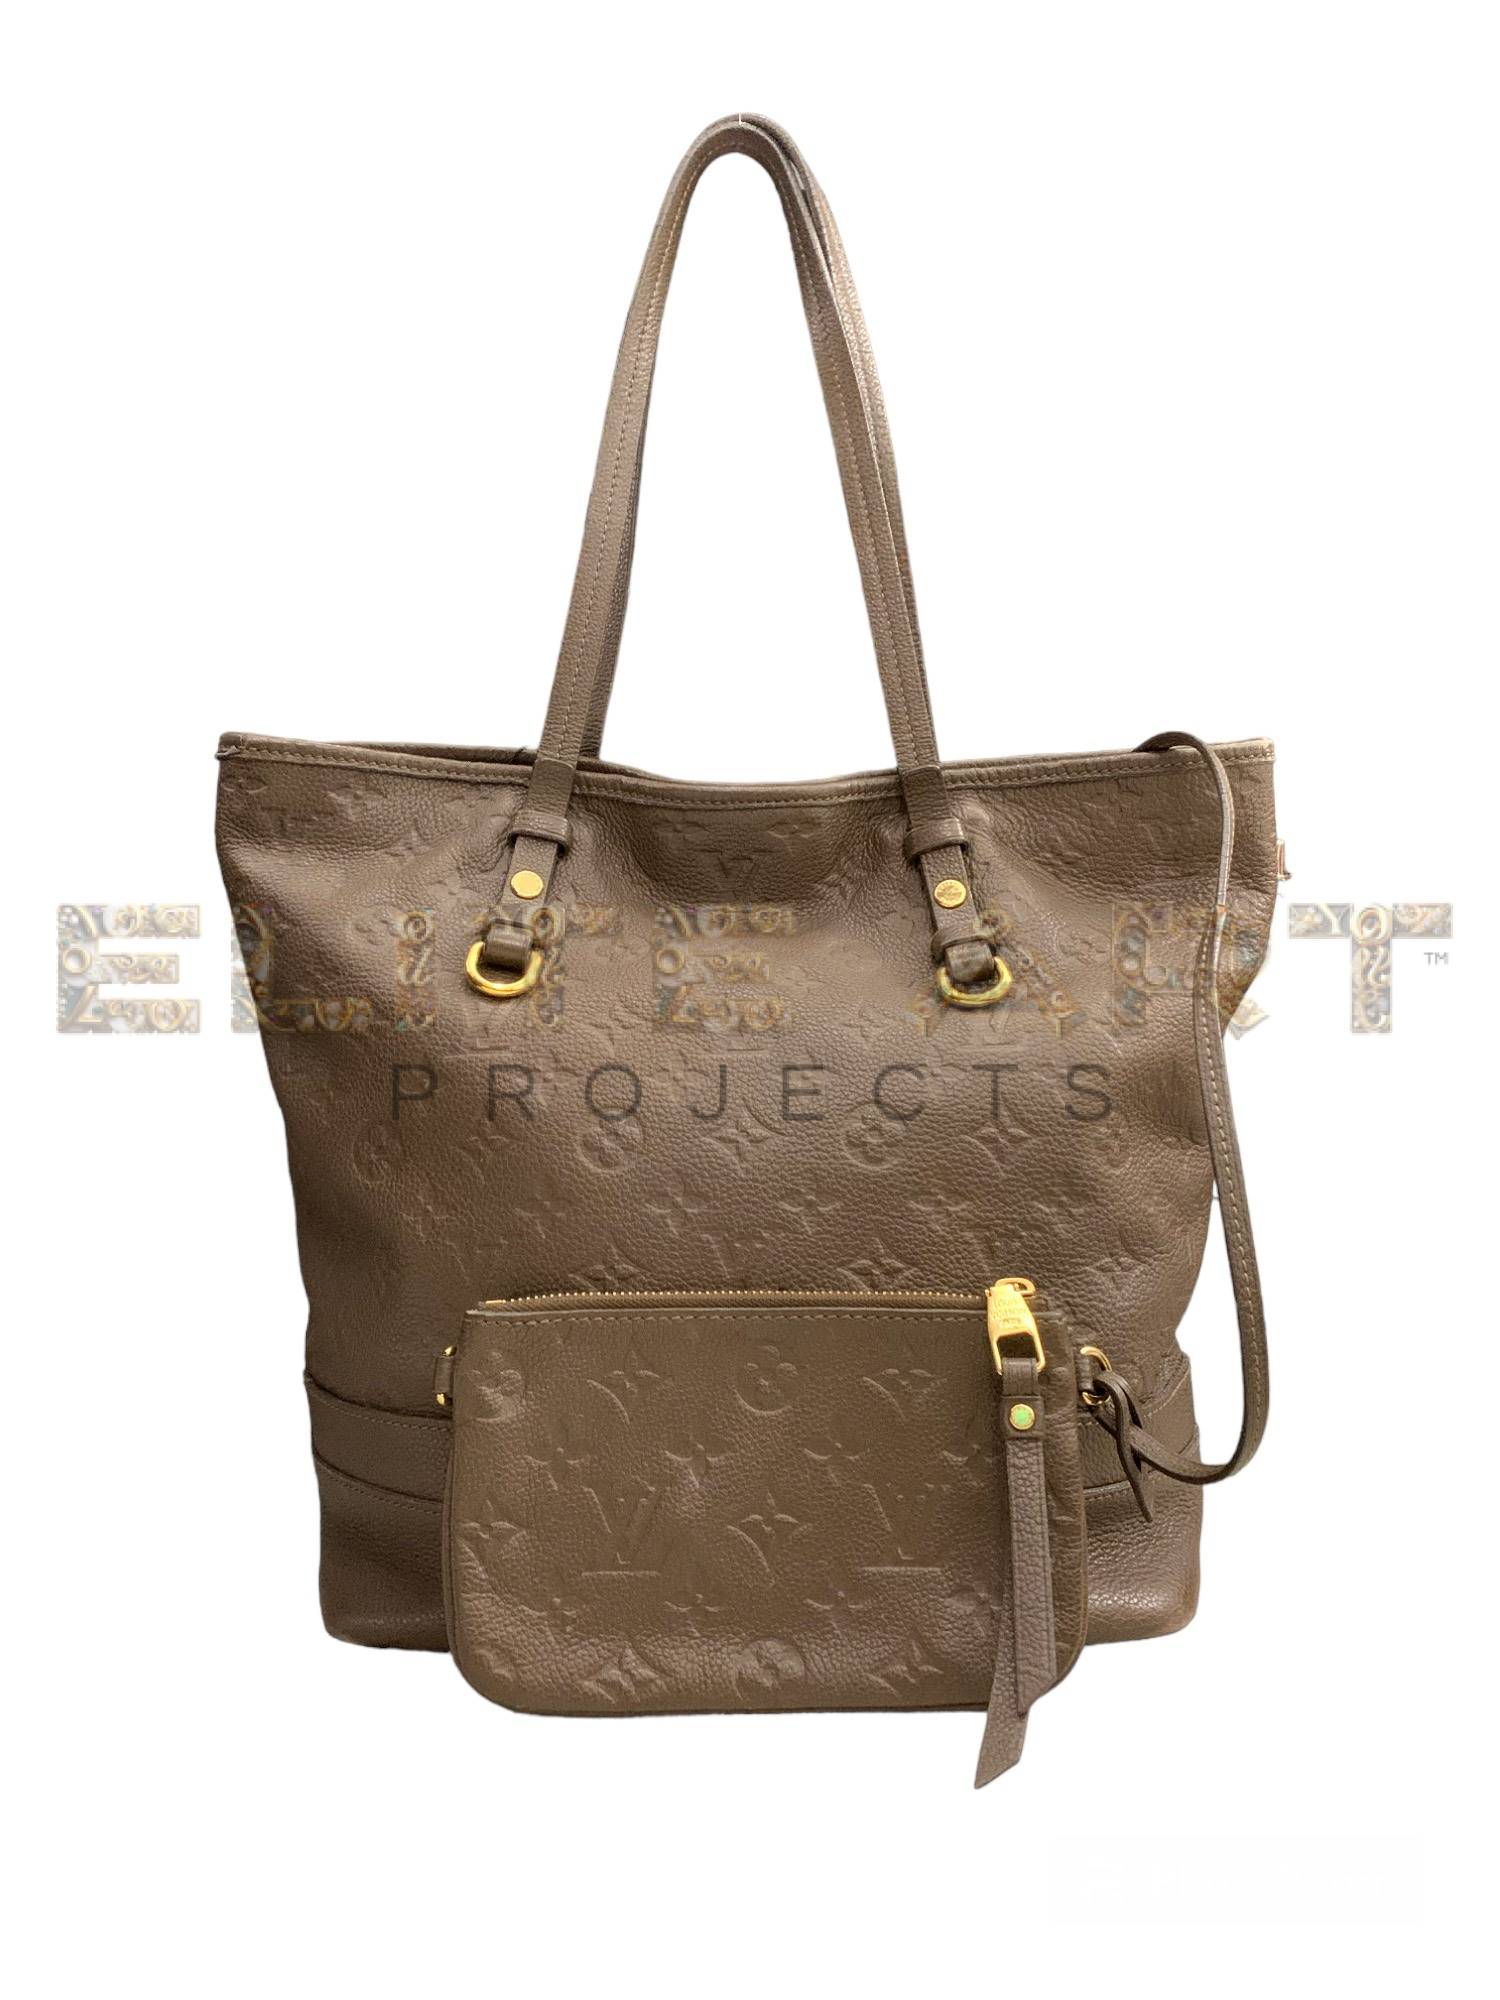 Louis Vuitton, Citadine Bag, sophistication, ELS Fashion TV